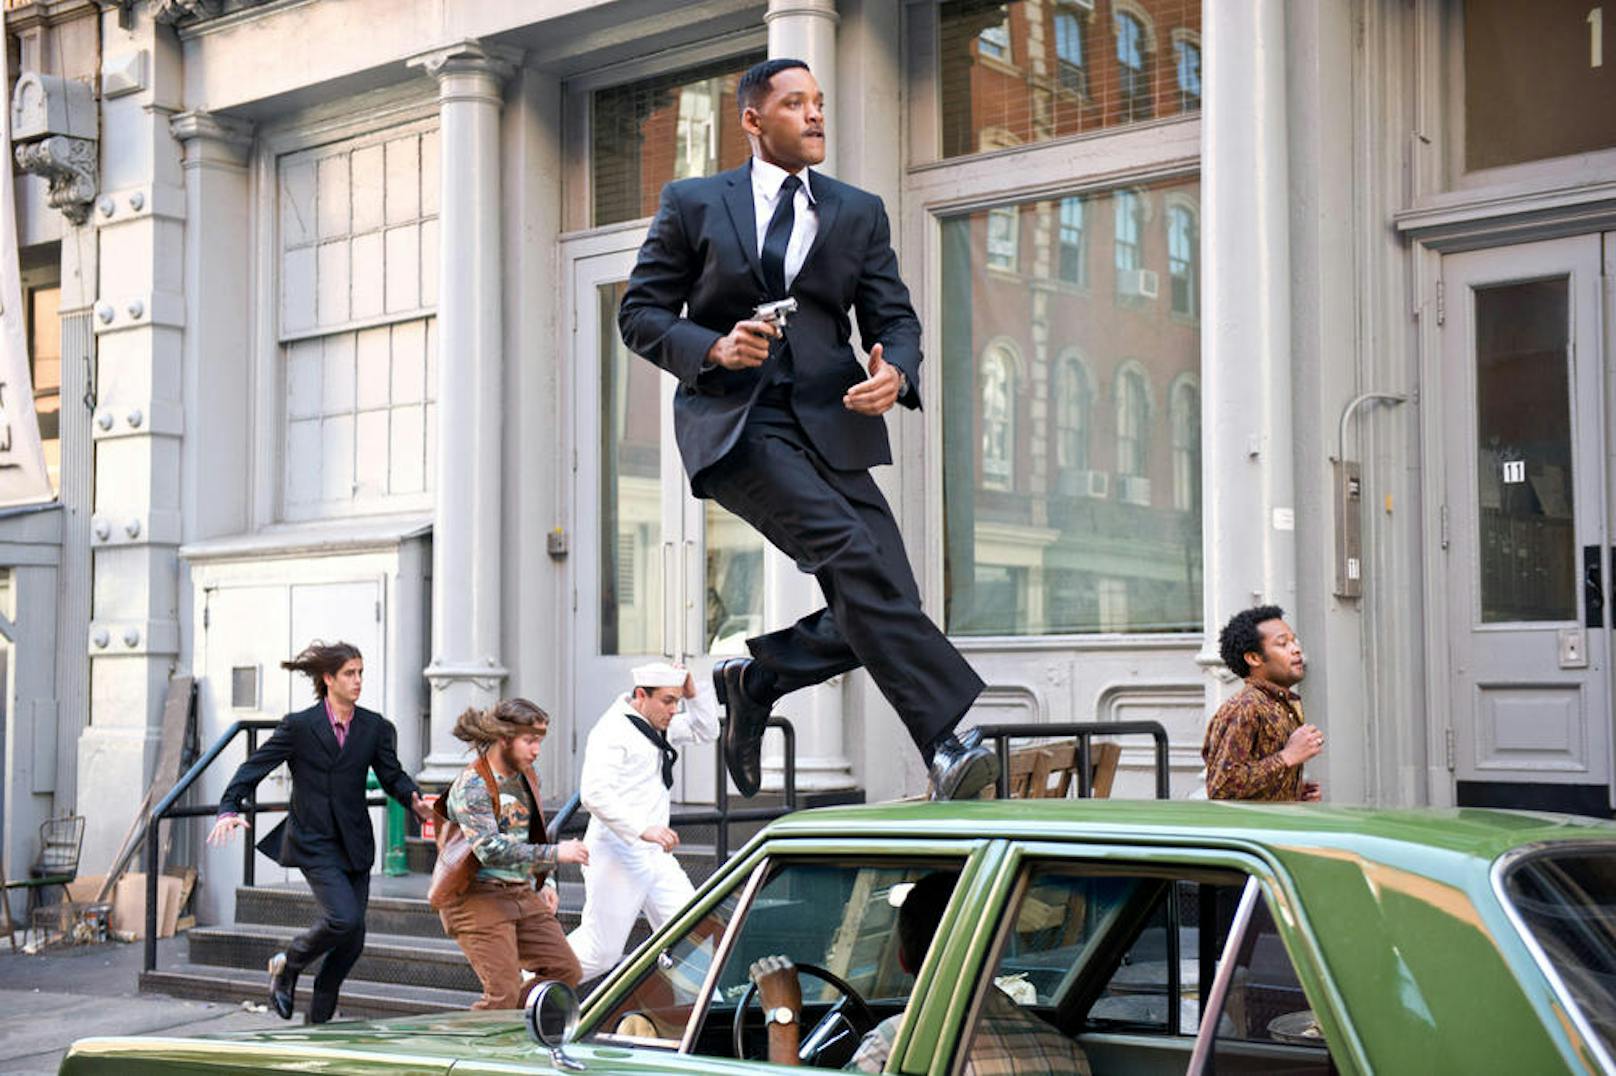 Will Smith in "Men in Black 3"